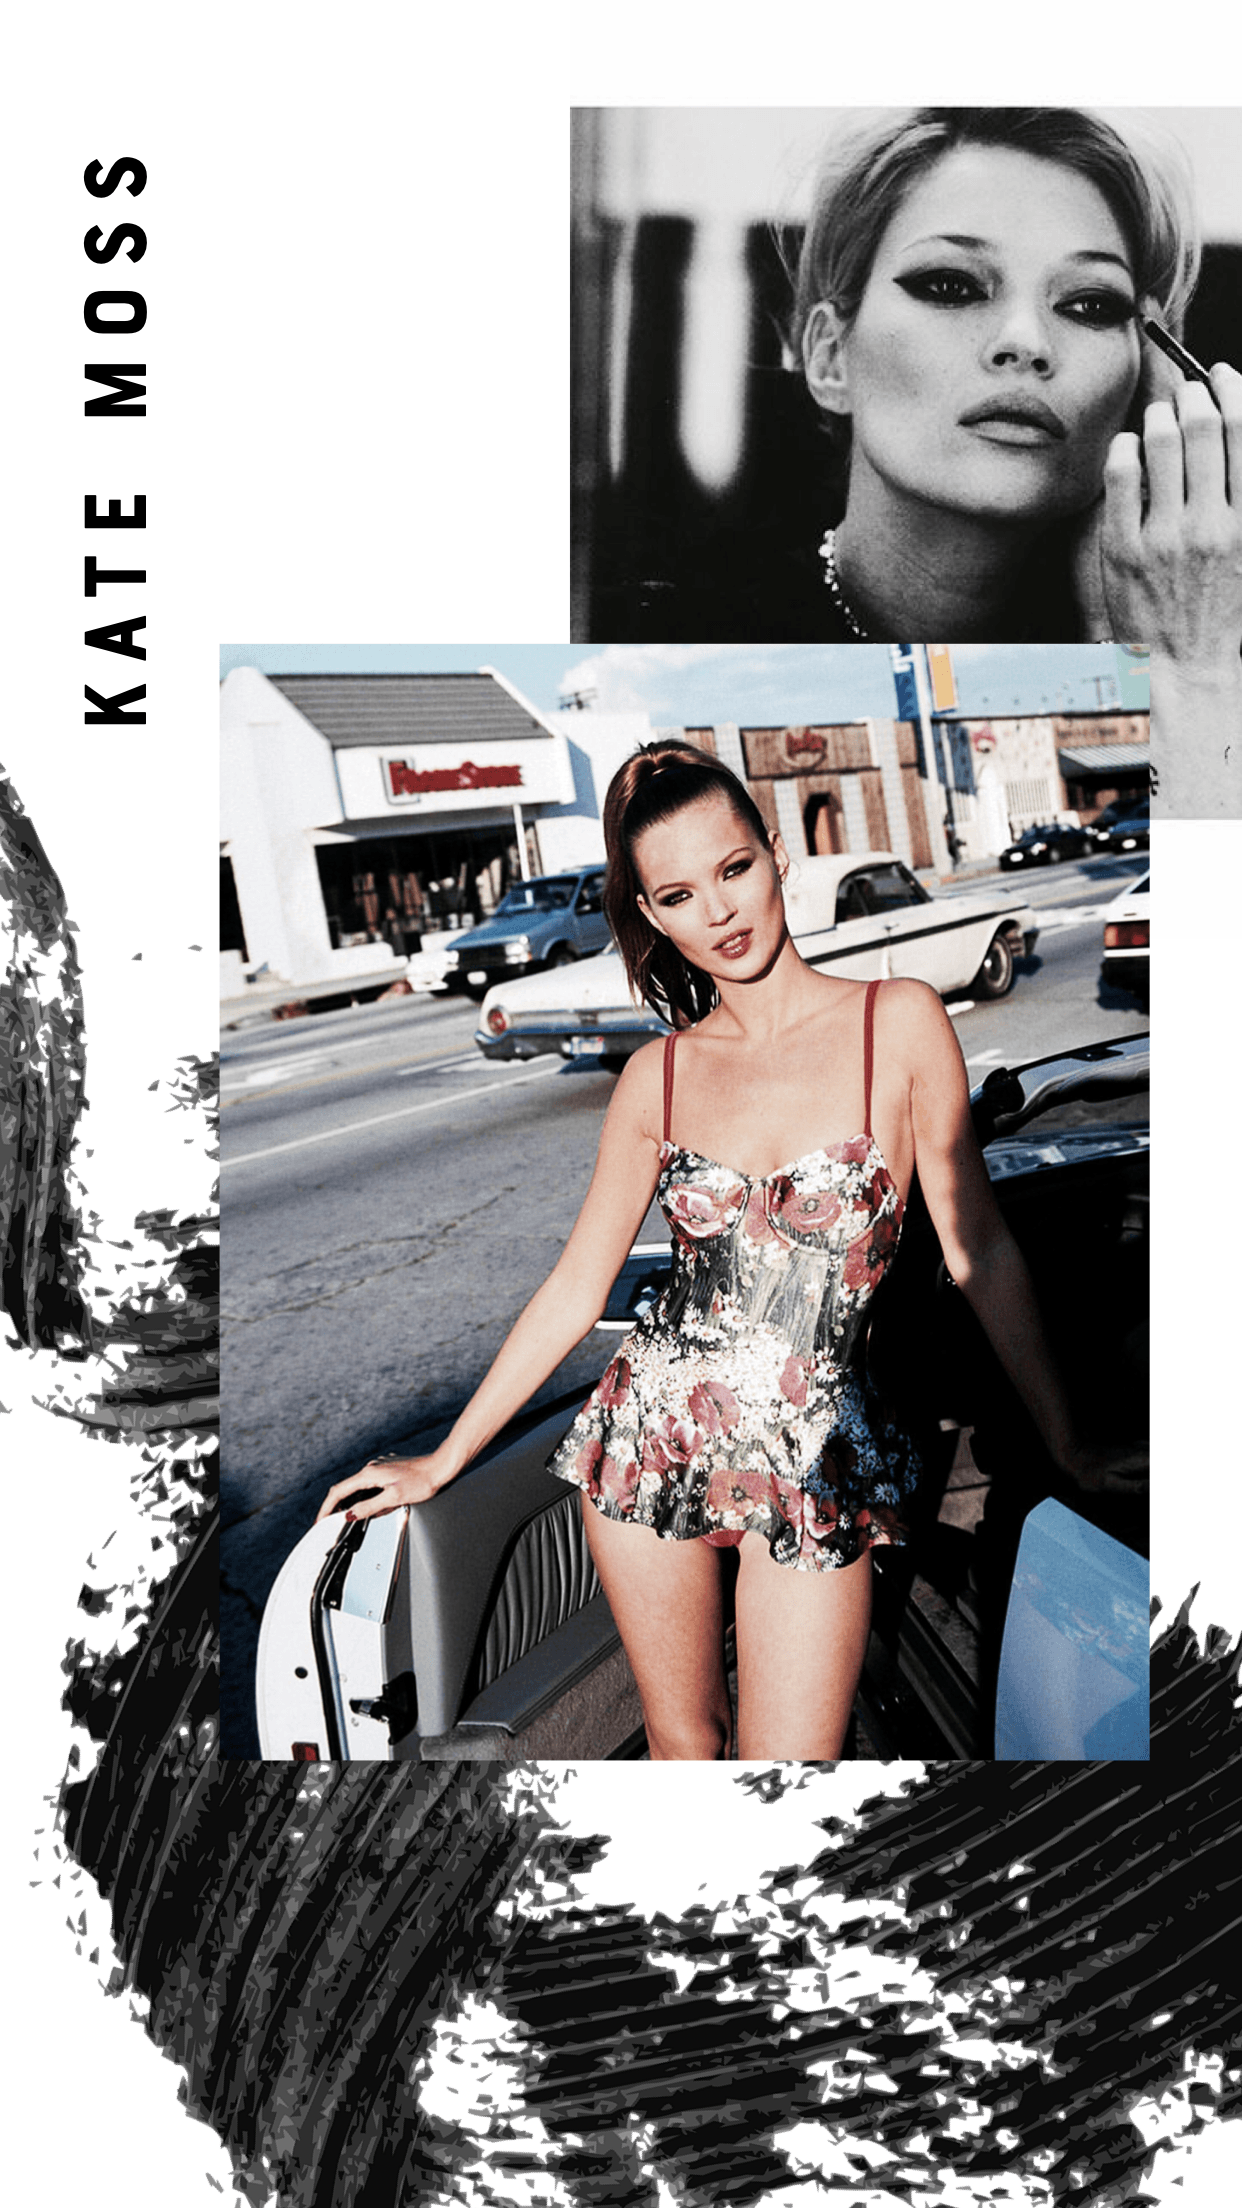 Kate Moss / Wallpaper #wallpaper #katemoss #wallpaperiphone #fashion